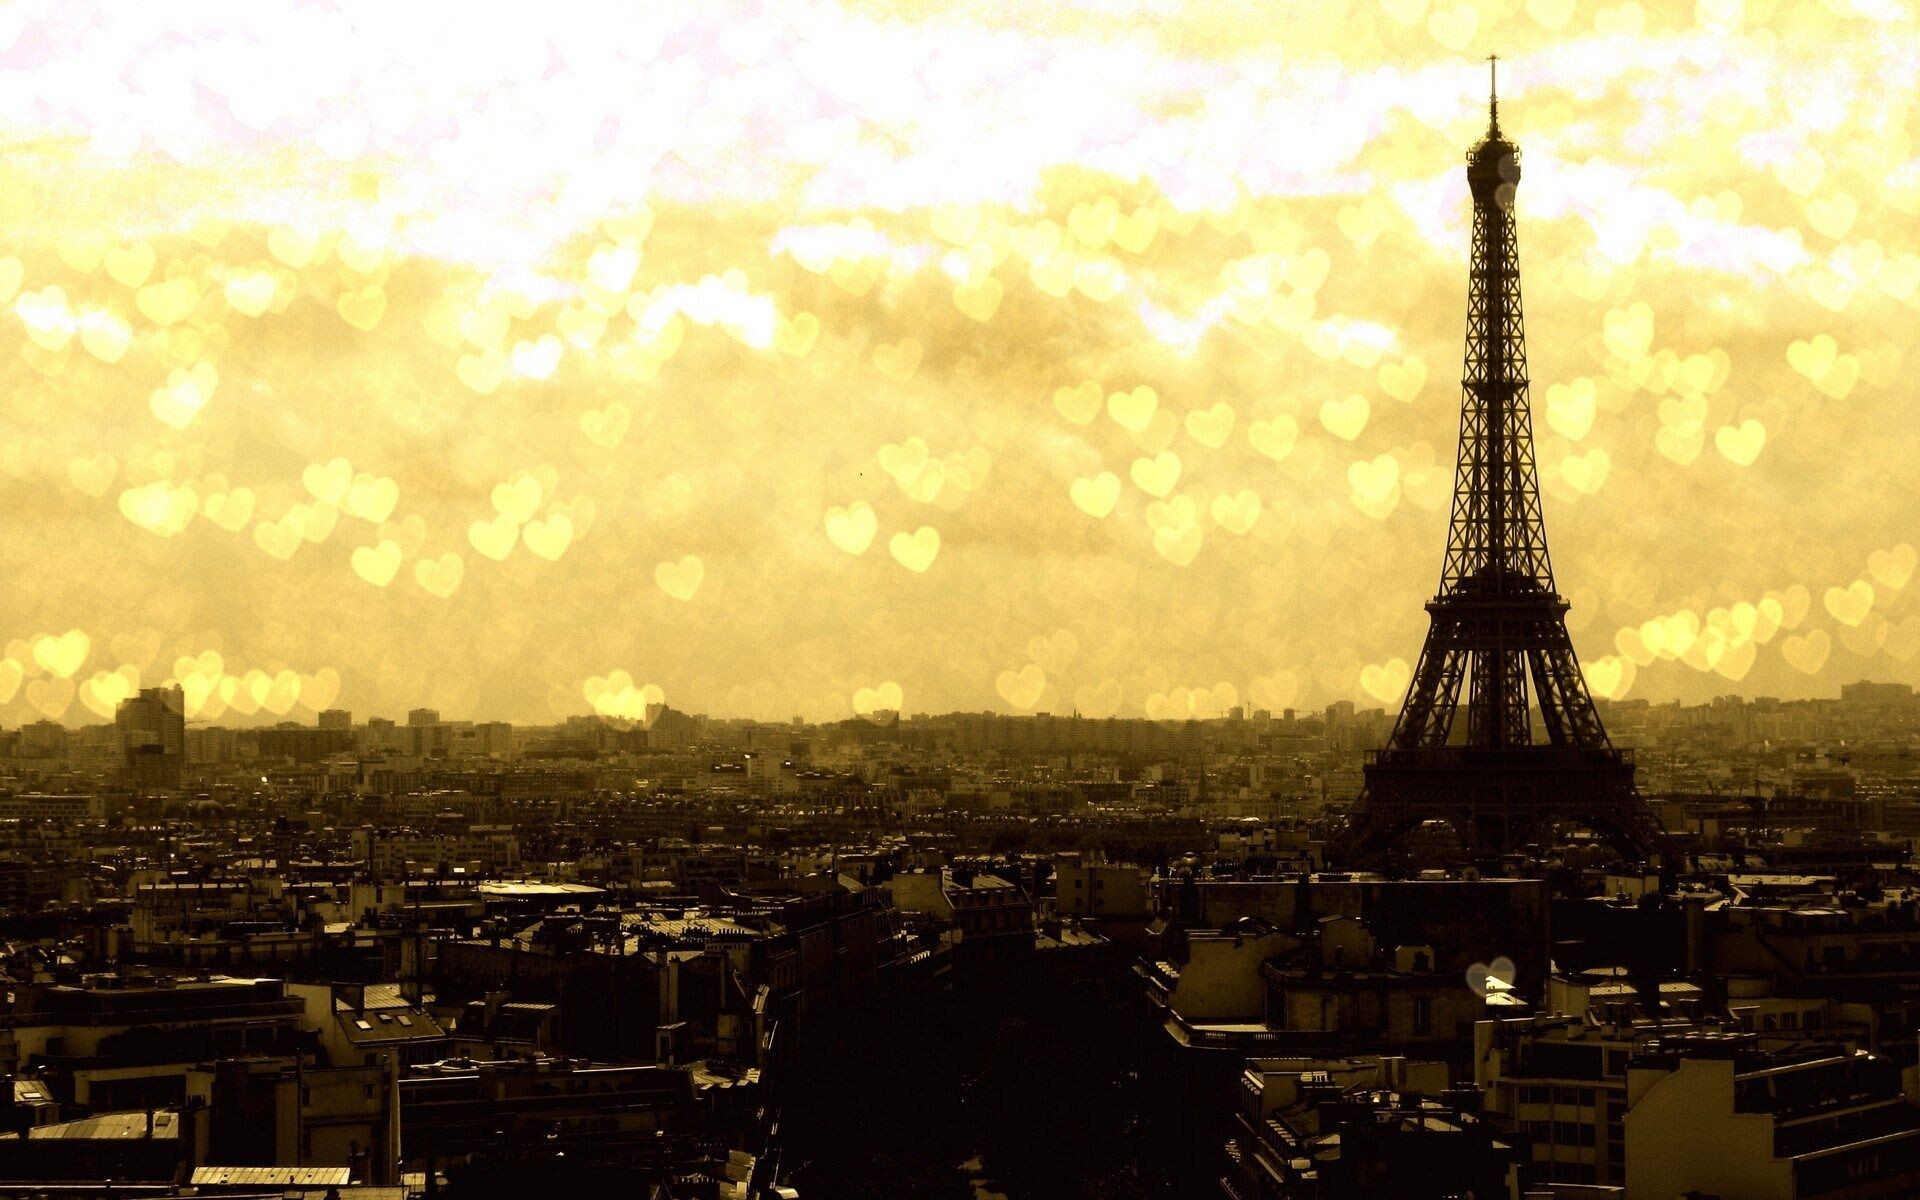 Gold Lights: Eiffel Tower, Paris, France, Golden glittering lighting, The City of Lights. 1920x1200 HD Wallpaper.